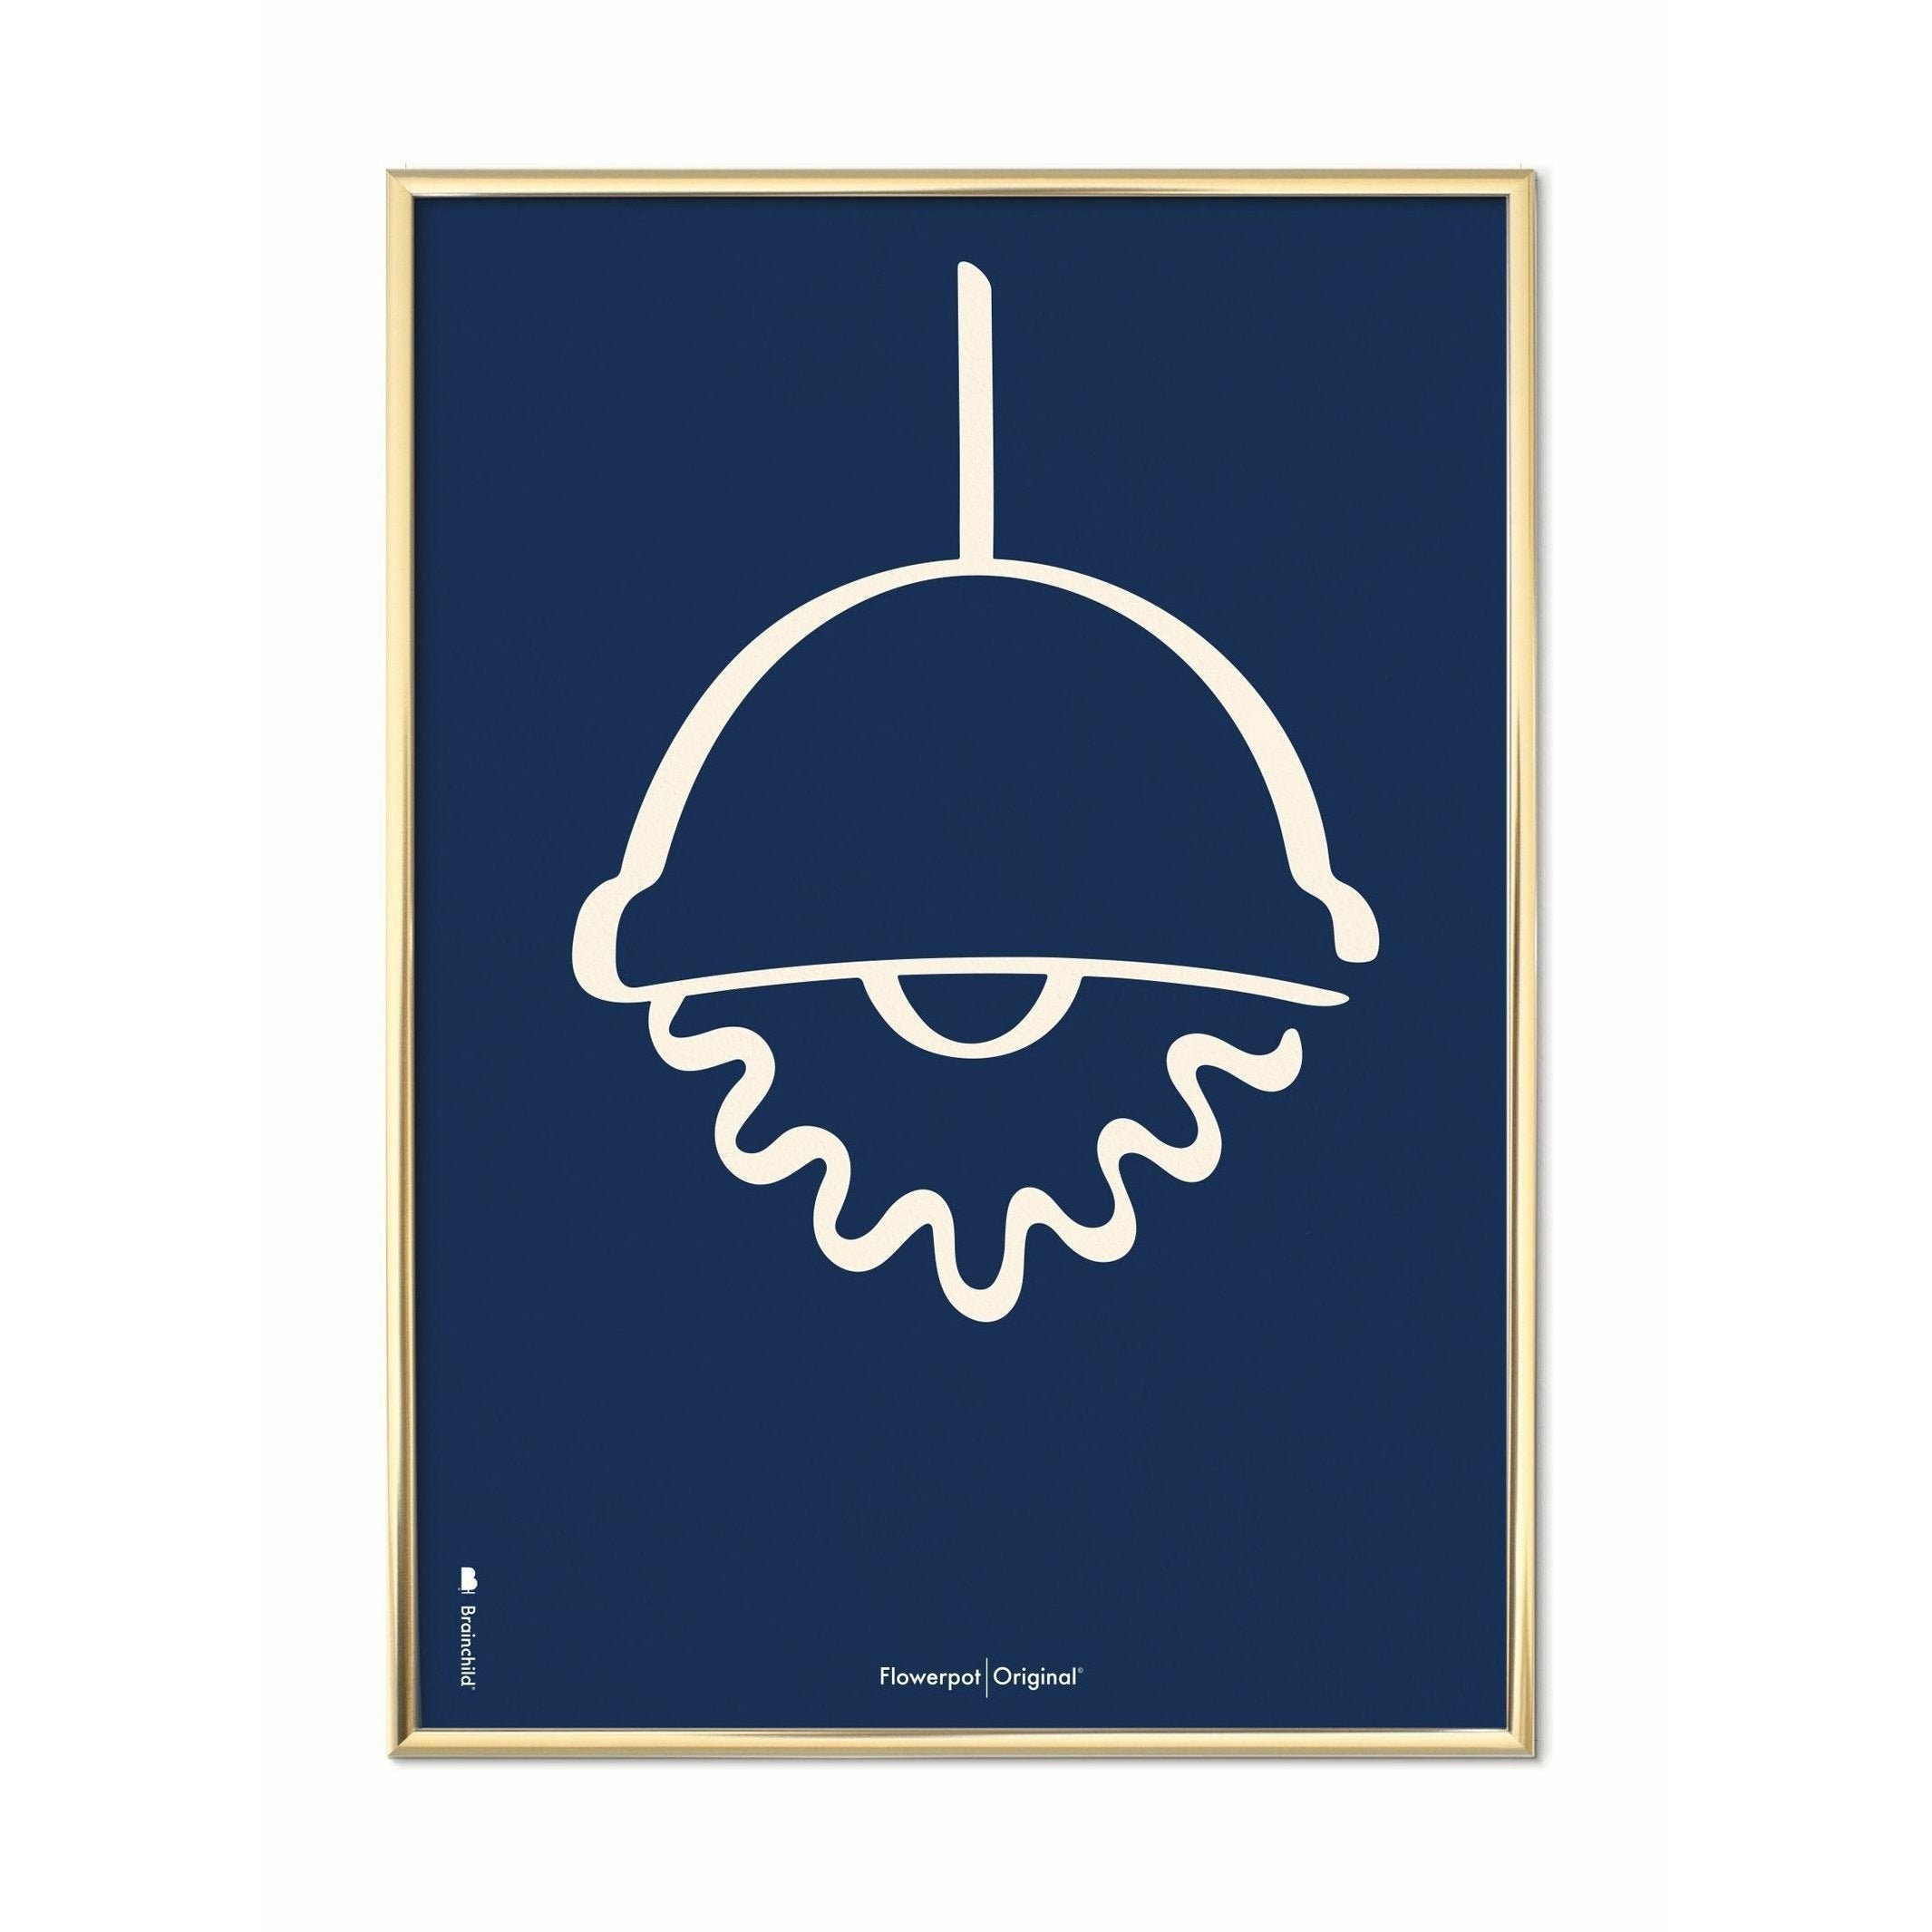 Plakát Brainchild Flowerpot Line, mosazný barevný rám 70 x100 cm, modré pozadí